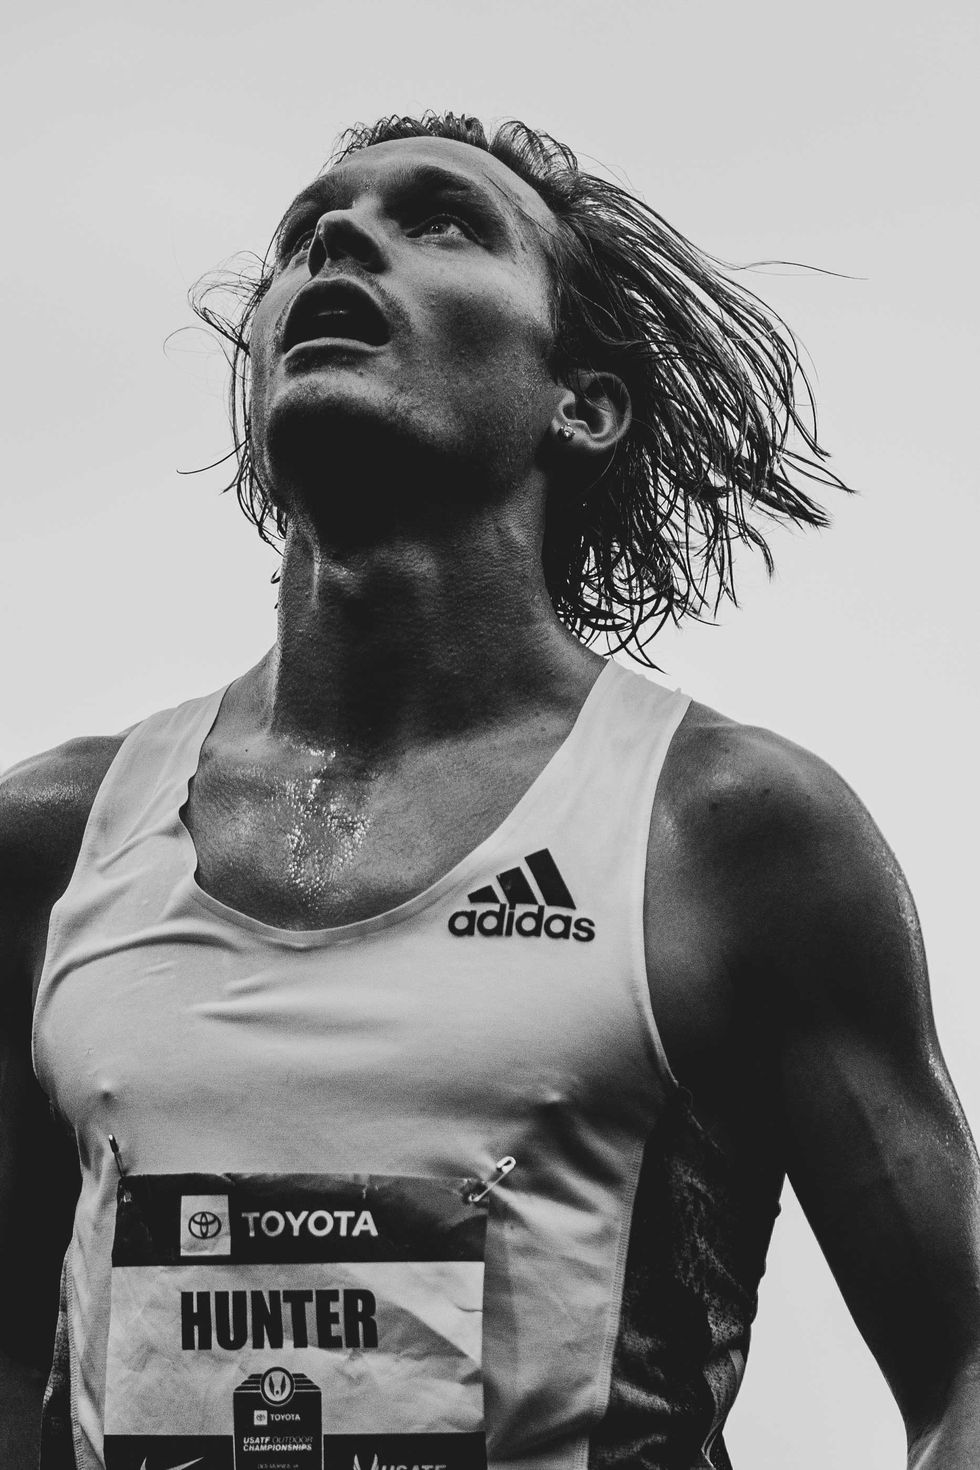 How Running Changed Me - Andrea Lytle Peet - Runner's World - Li